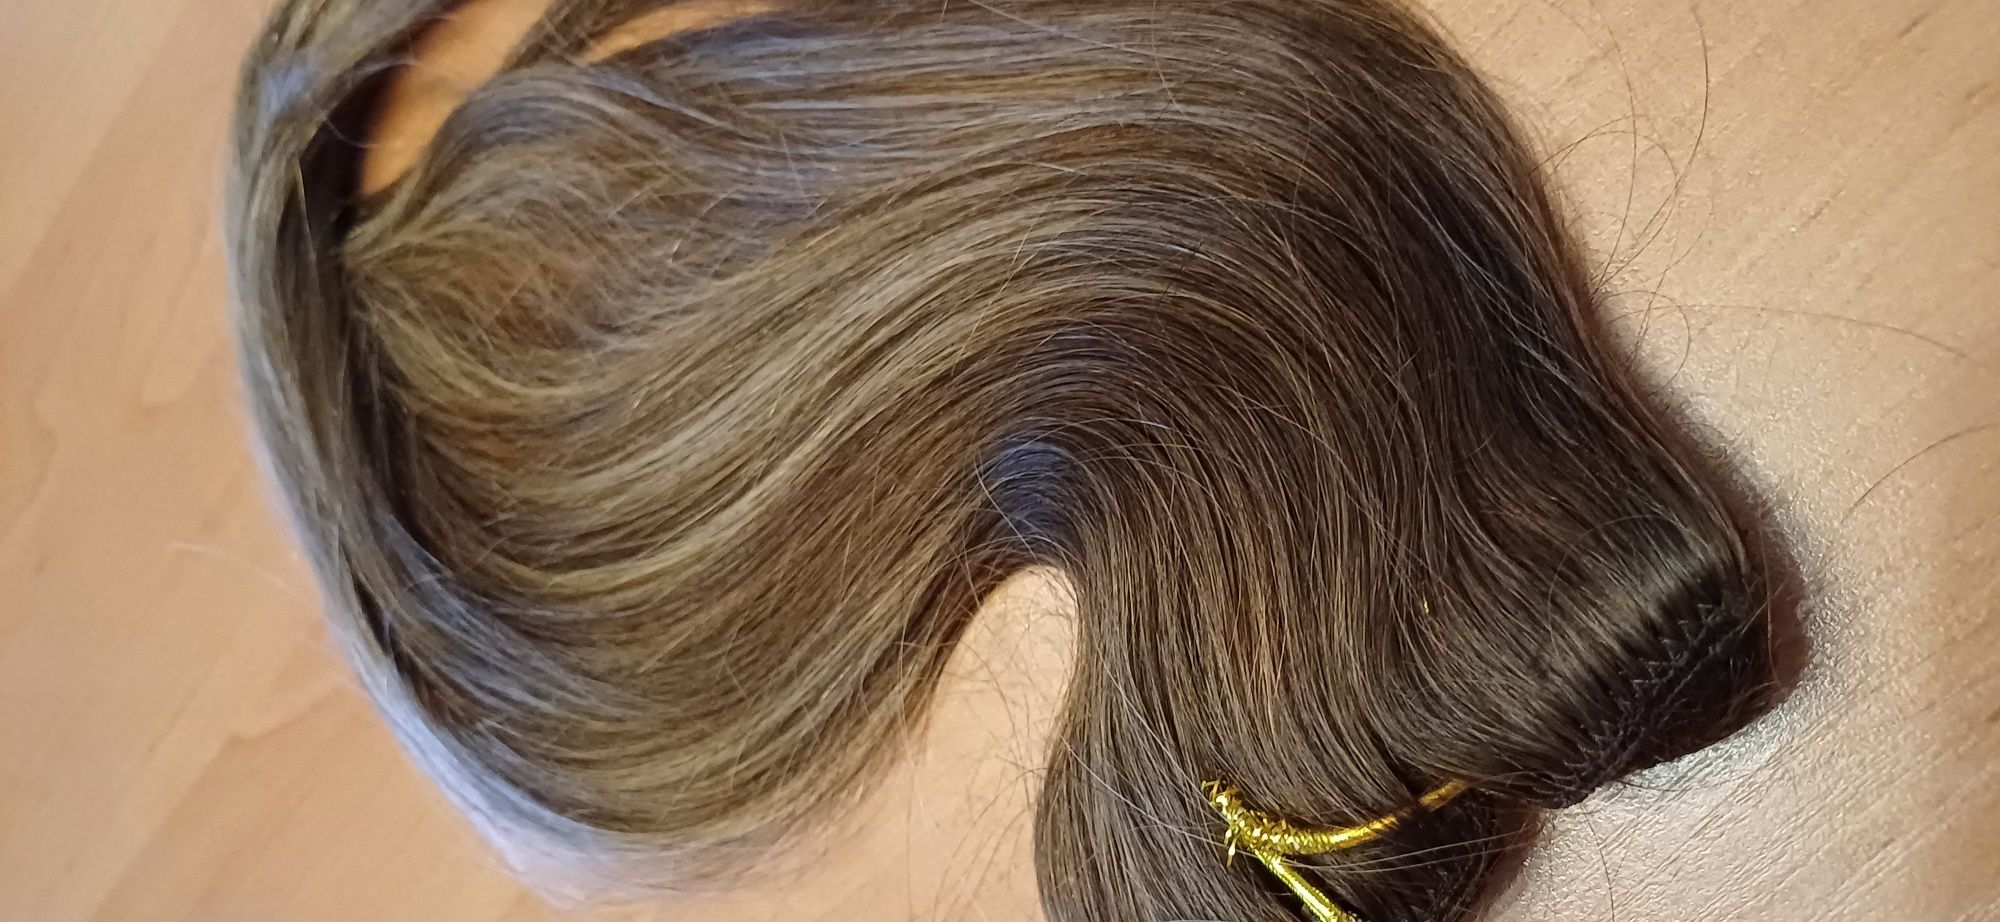 Włosy naturalne Clip in 43cm